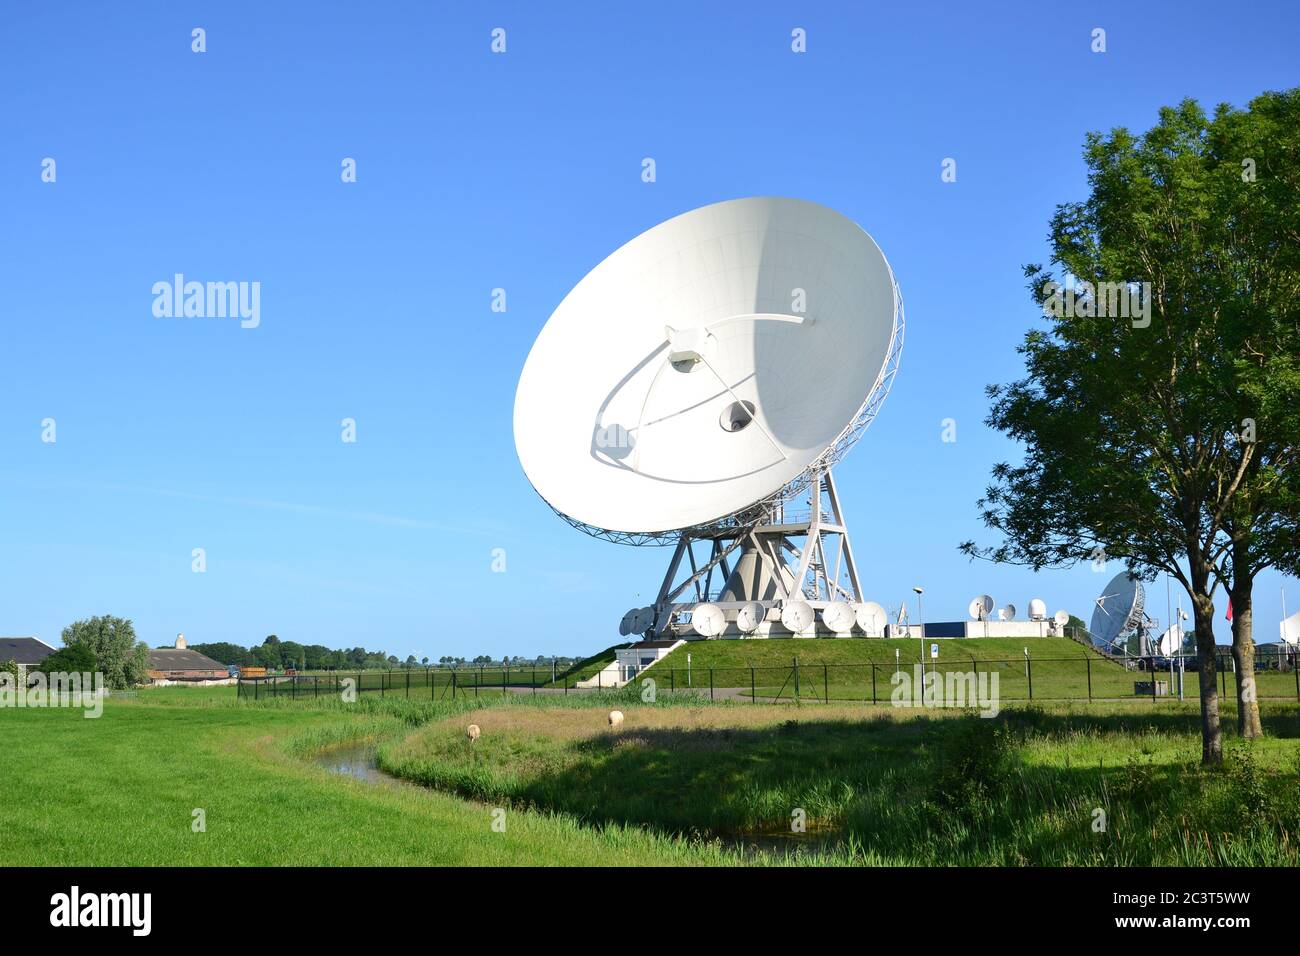 Große Empfänger für Satellitenkommunikation in der Stadt Burum, Niederlande. Niederlande Stockfoto